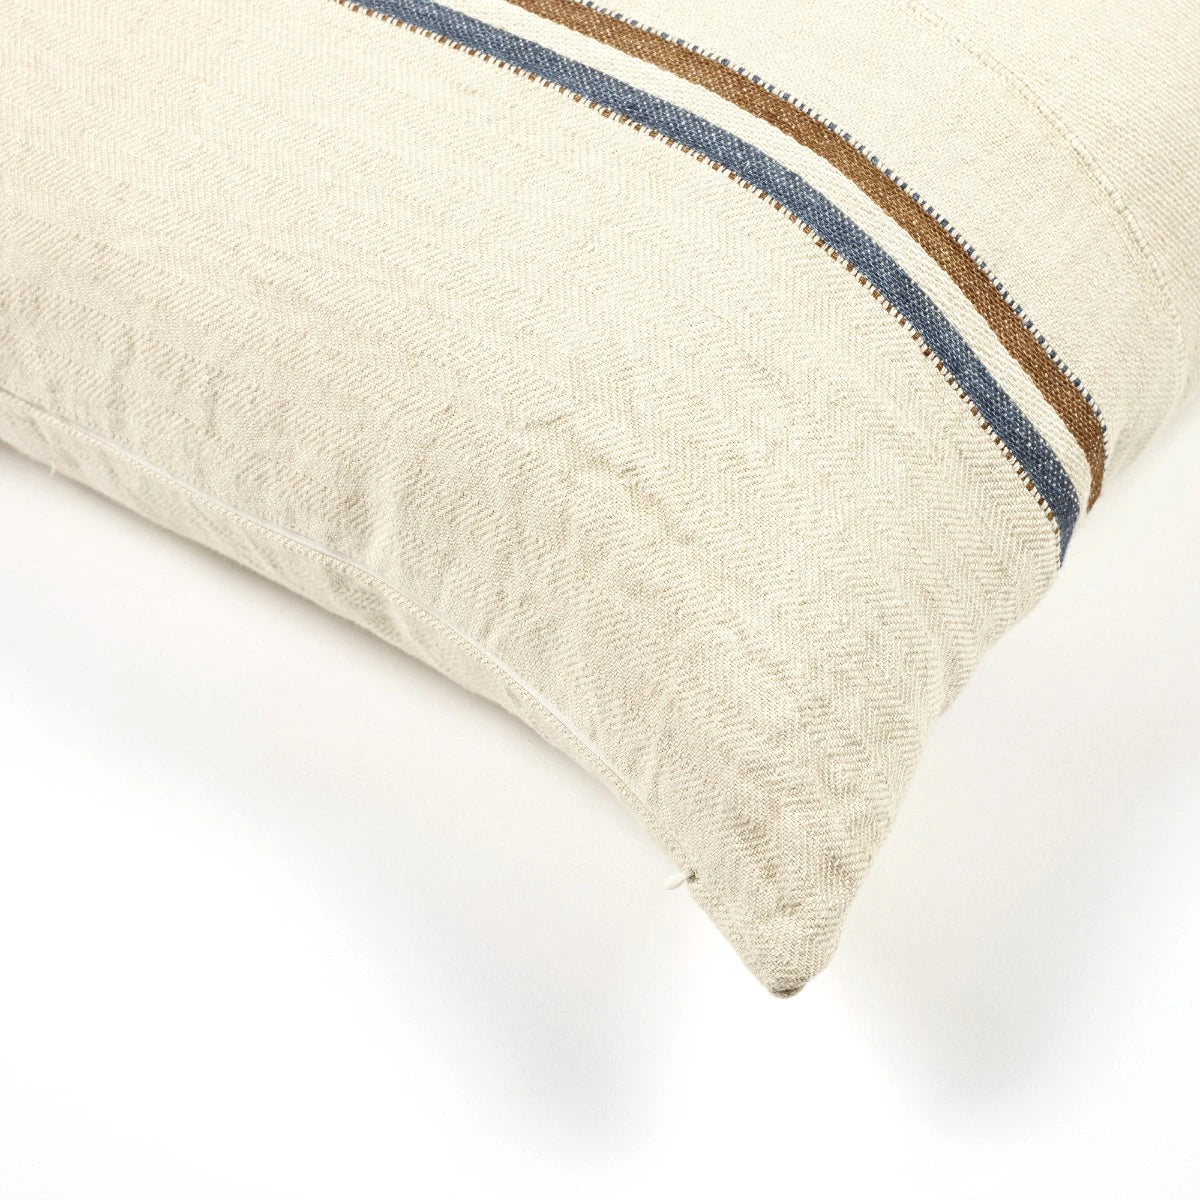 Auburn Pillow Cover Stripe